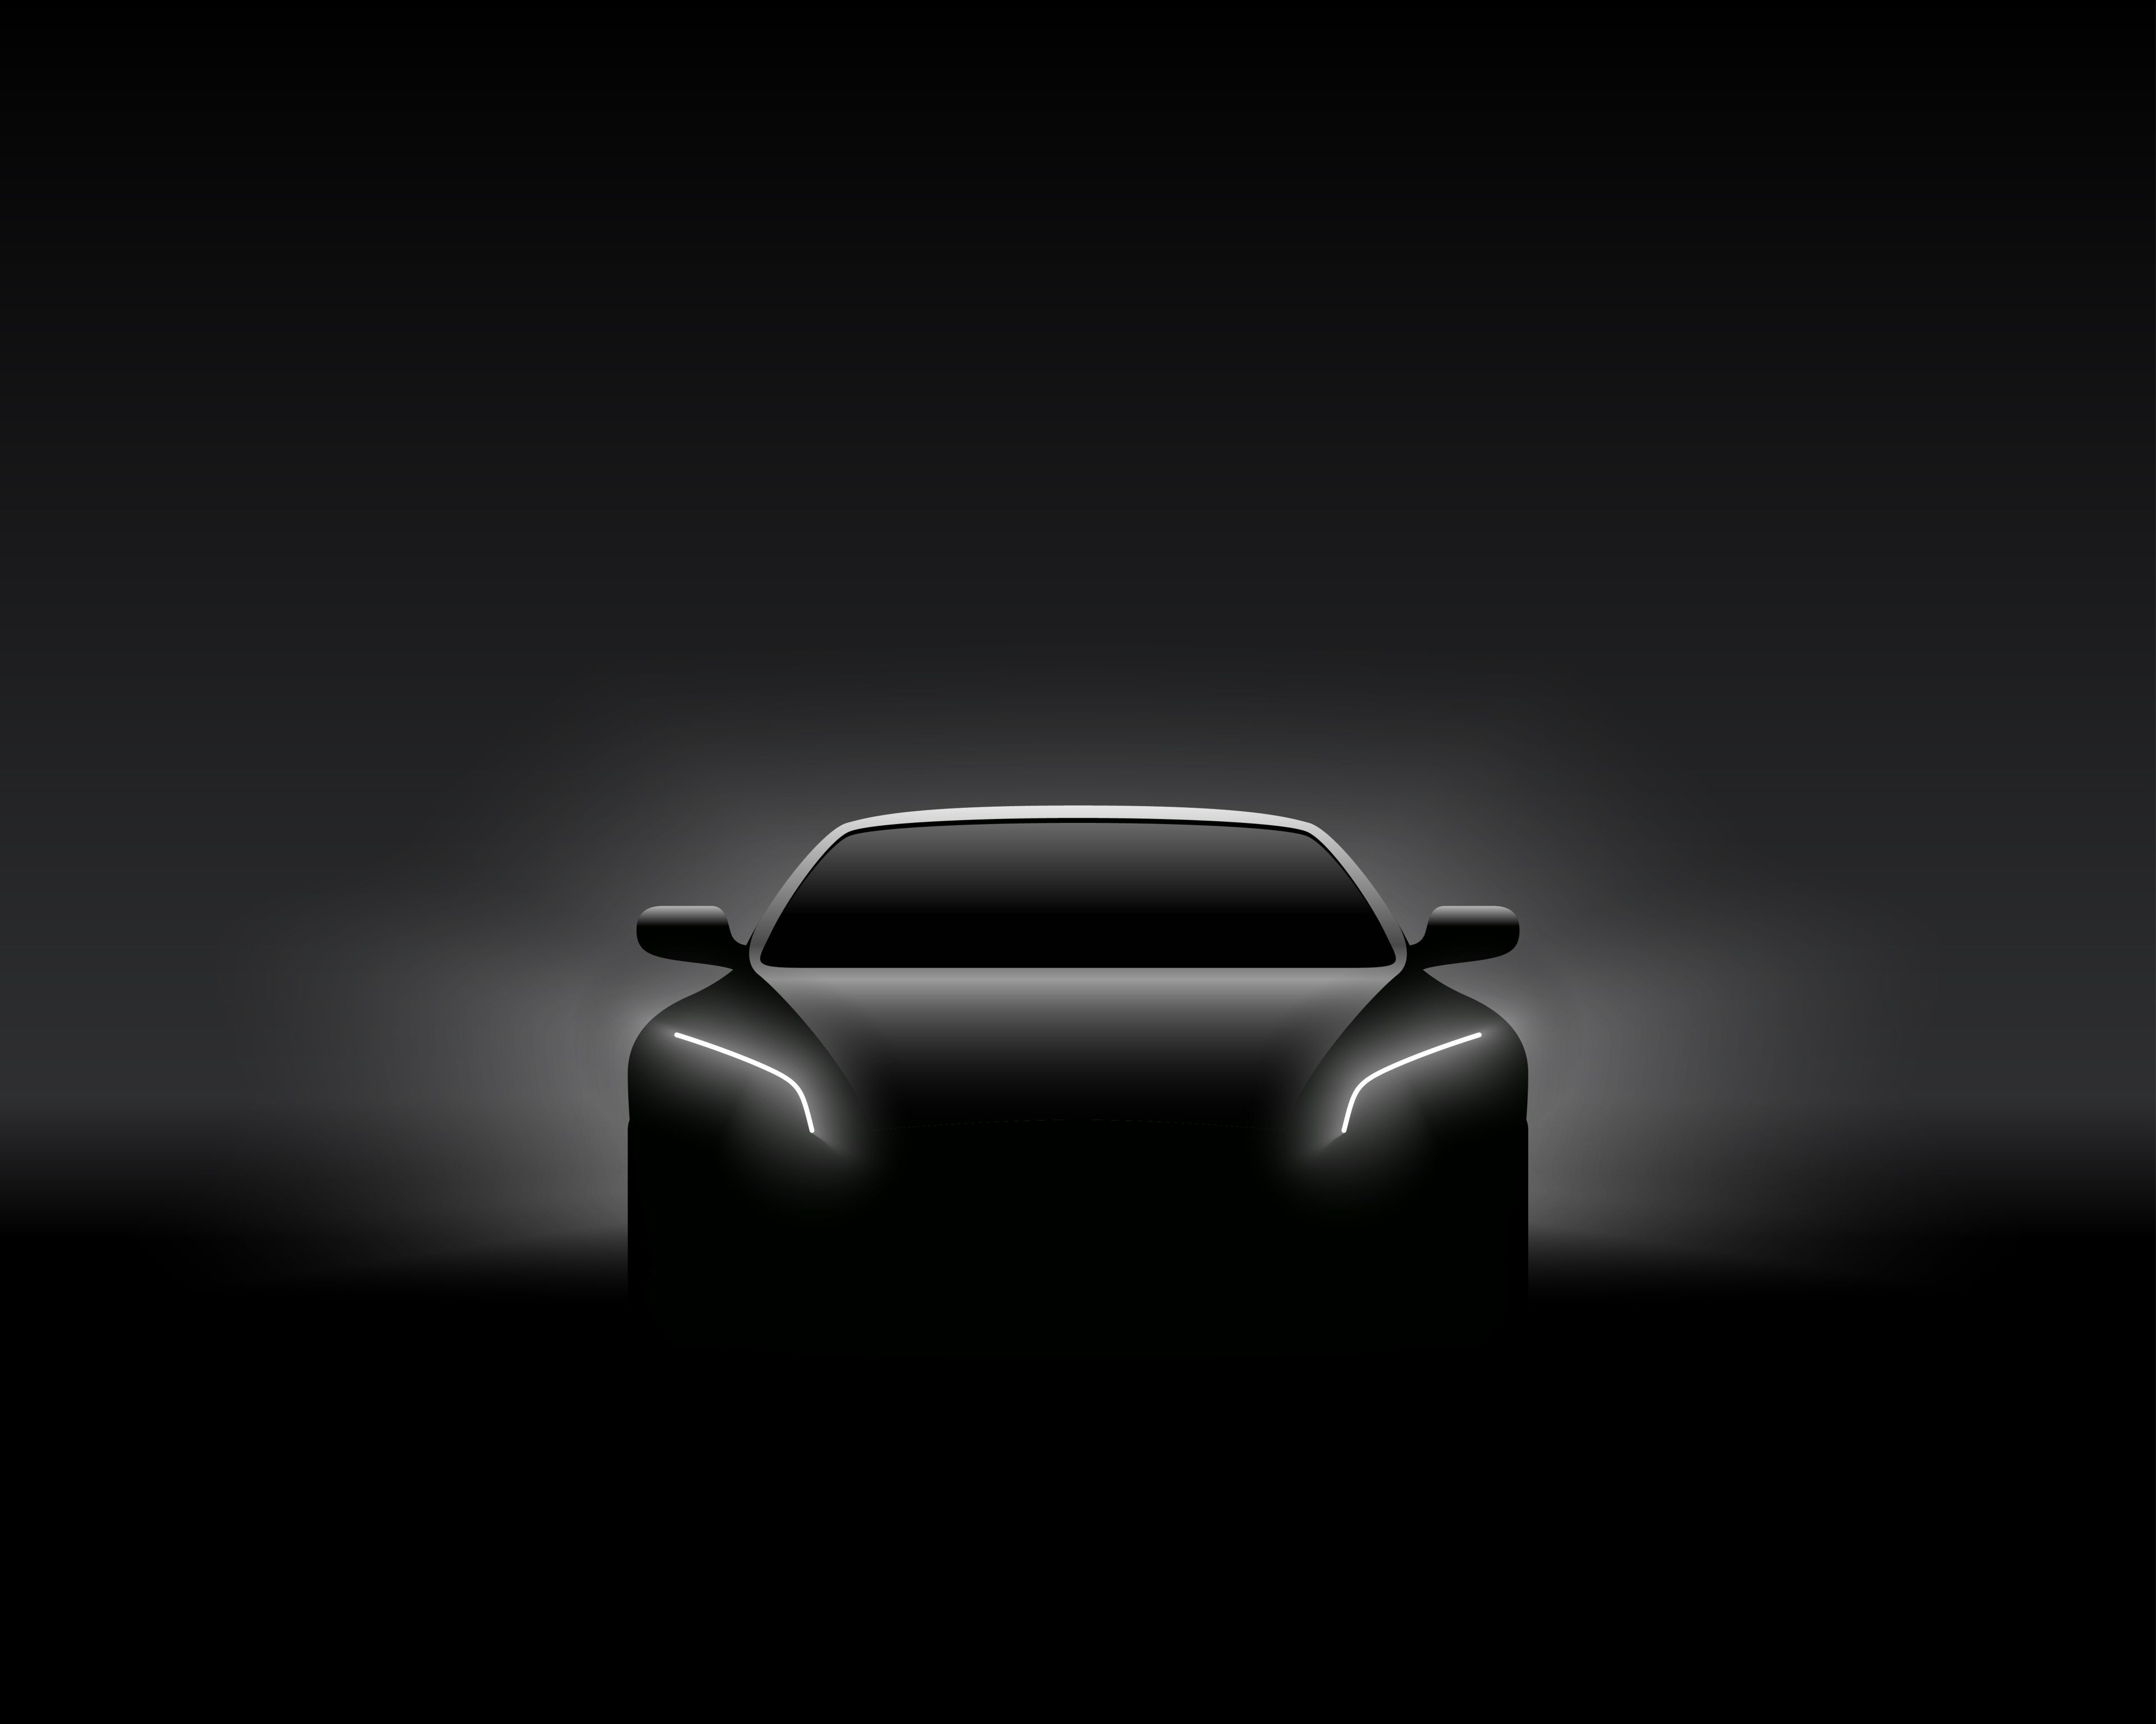 Ein schemenhaft erkennbare Silhouette von einem TESLA Auto.